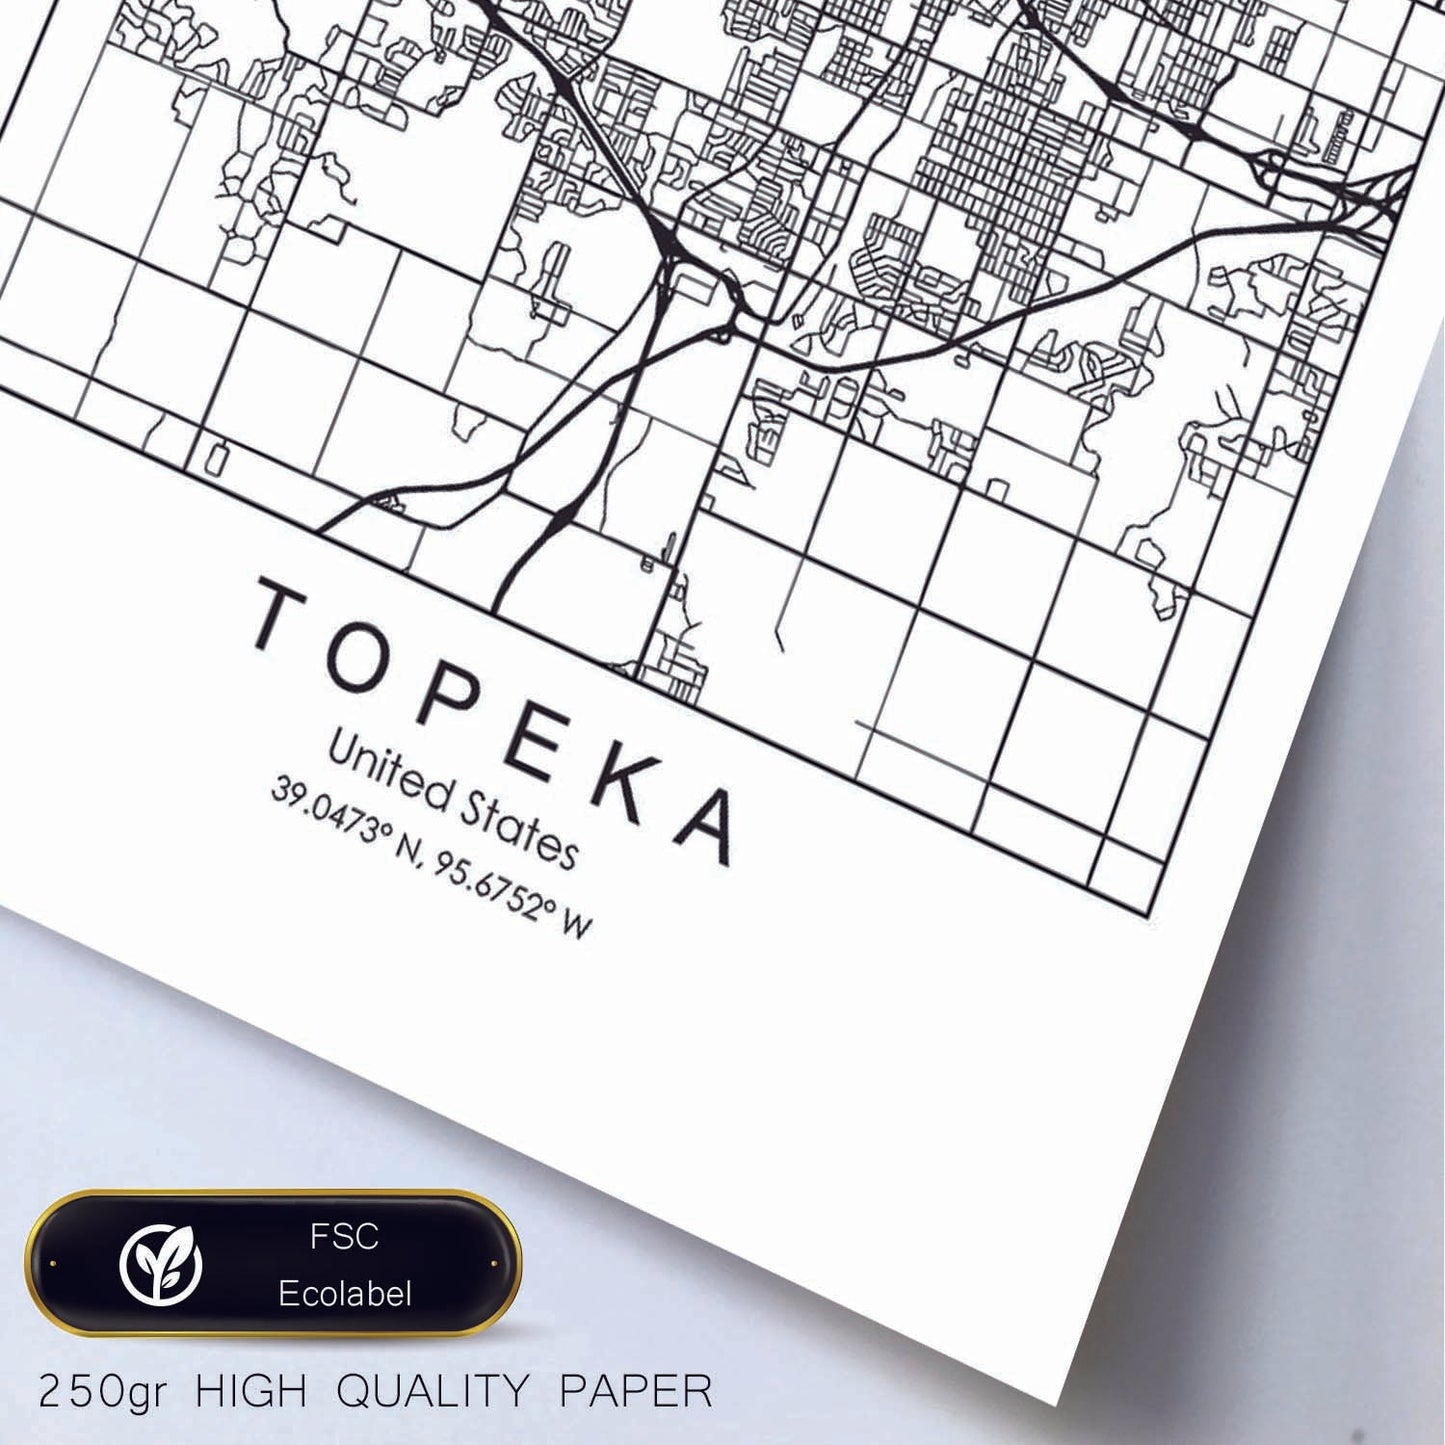 Poster con mapa de Topeka. Lámina de Estados Unidos, con imágenes de mapas y carreteras-Artwork-Nacnic-Nacnic Estudio SL